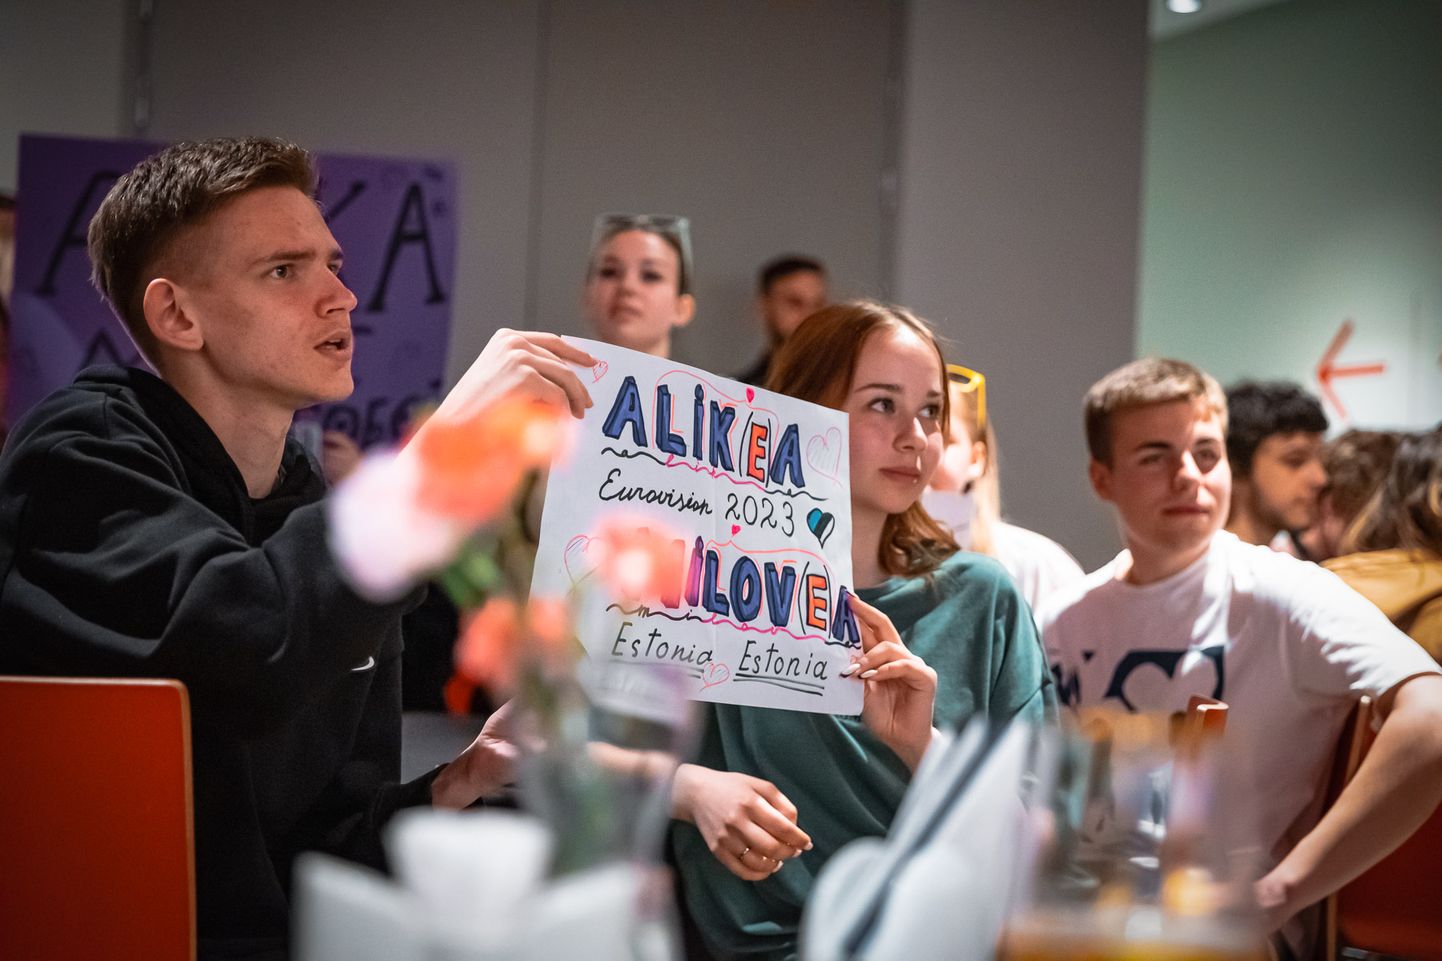 Ligemale poolsada narvalast kogunes neljapäeva õhtul Vaba Lava Narva teatrikeskuse kohvikusse, et elada ühisvaatamisel kaasa Alika etteastele Eurovisiooni lauluvõistlusel.